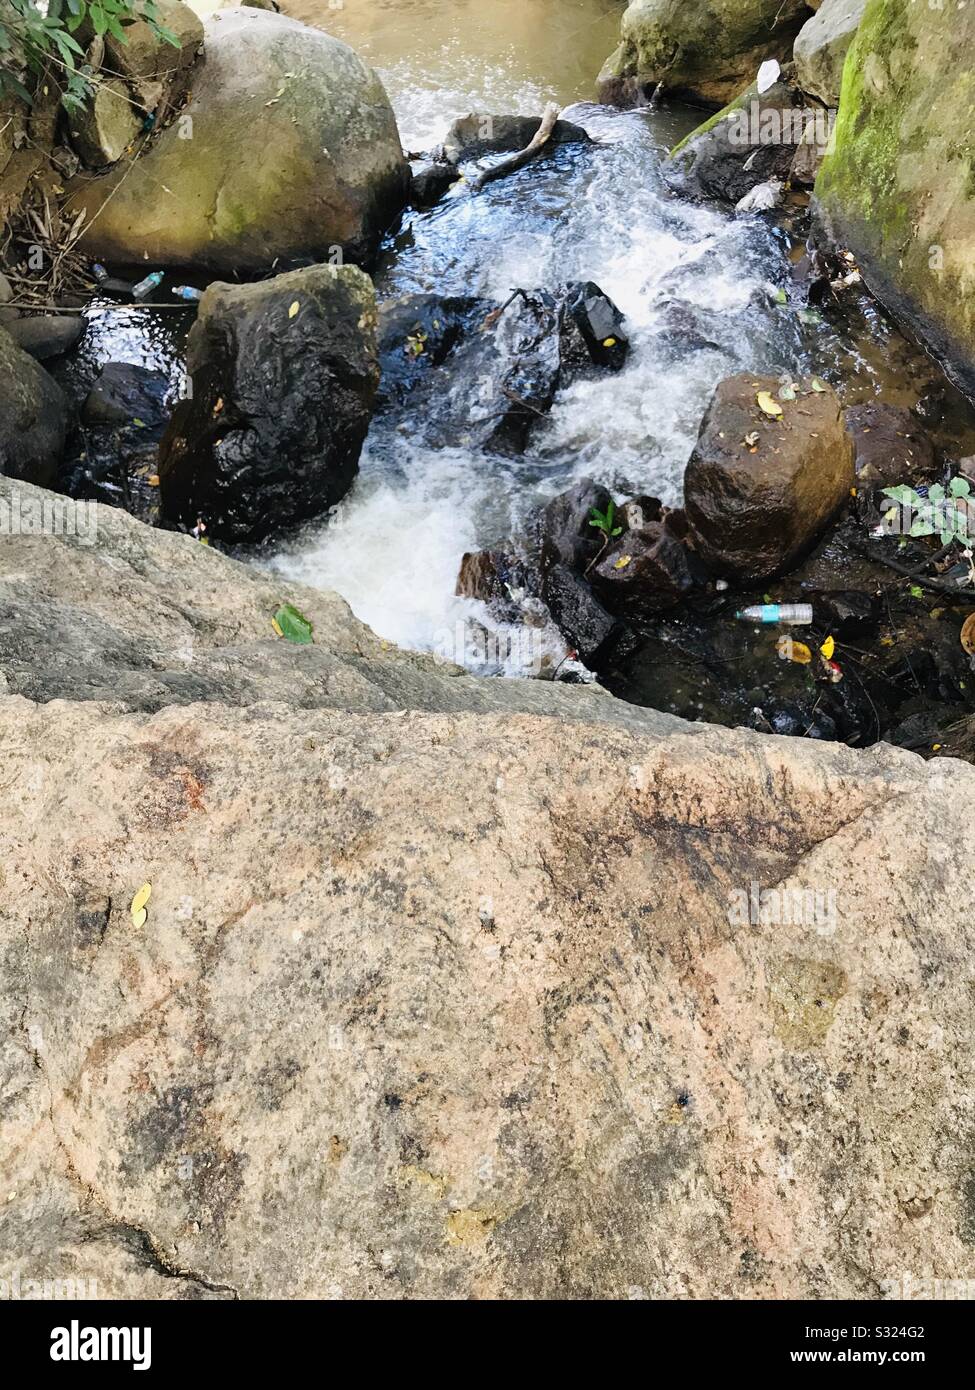 L'eau tombe près des chutes de singe, de la zone glissante rocheuse avec écoulement d'eau , de l'eau dans une image à l'envers Banque D'Images